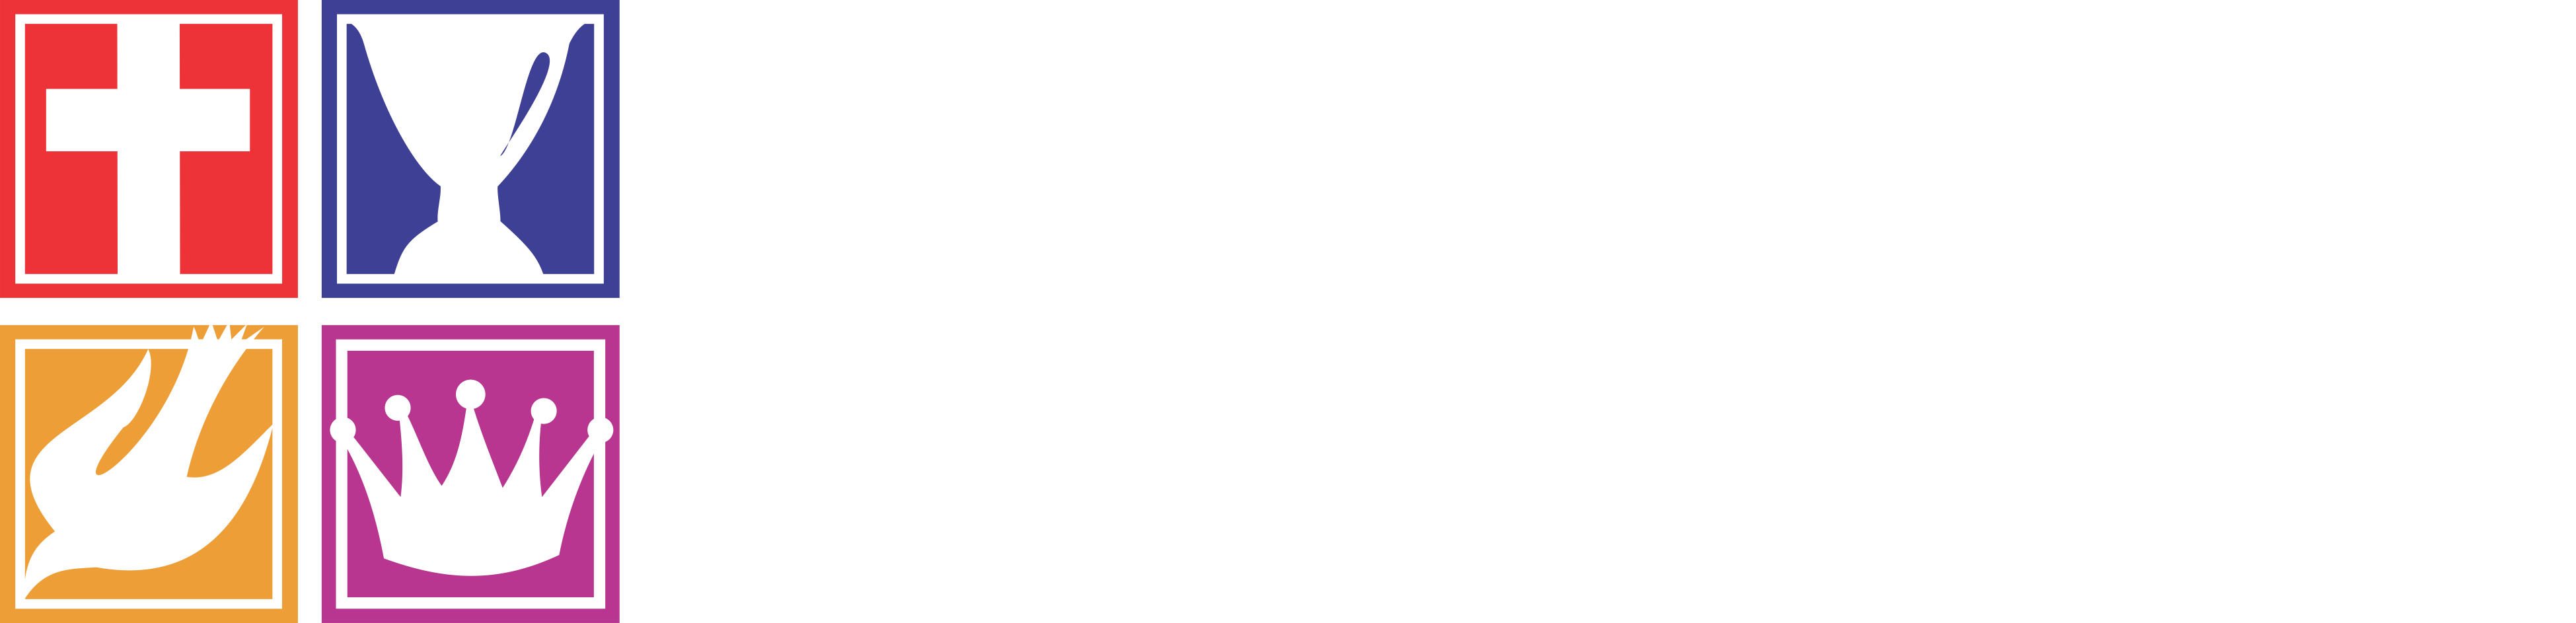 Foursquare National Convention Foursquare Gospel Church